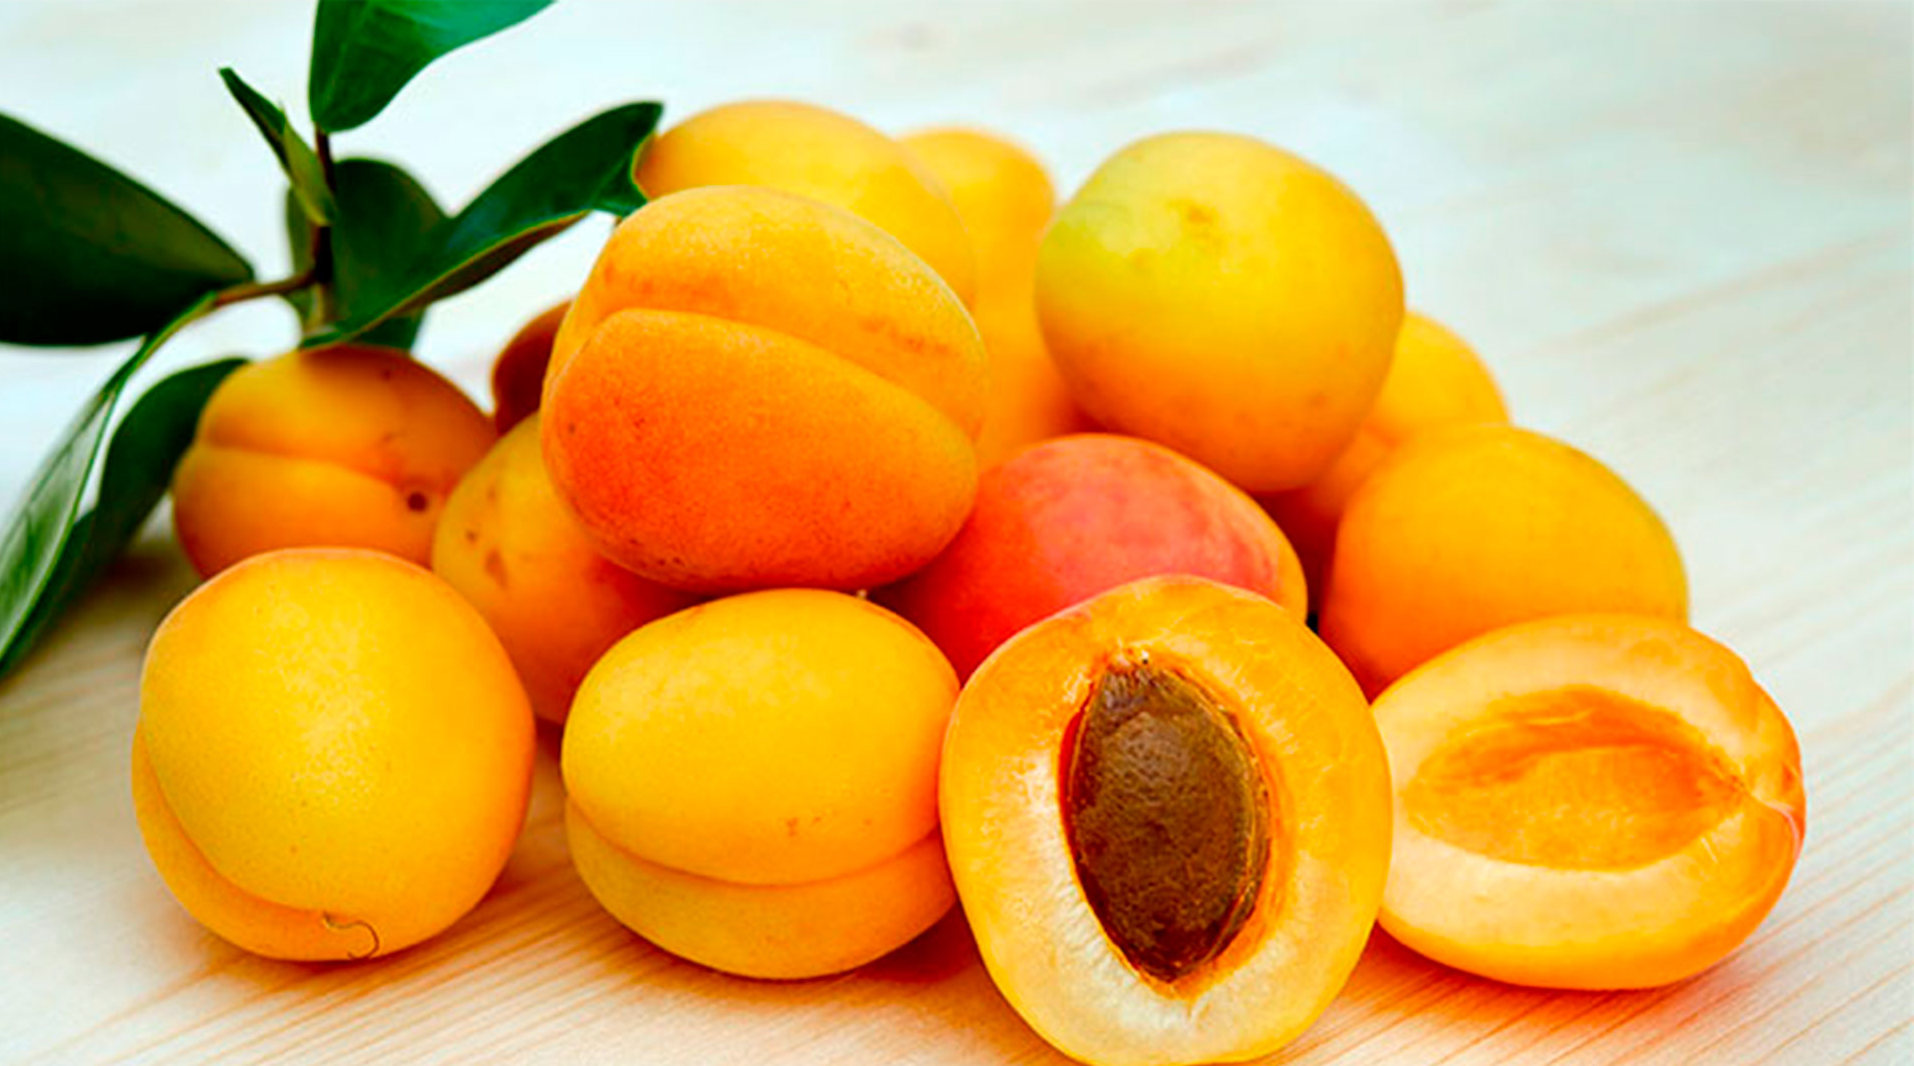 Урюк — сушеный абрикос, приготовленный на ветках дерева